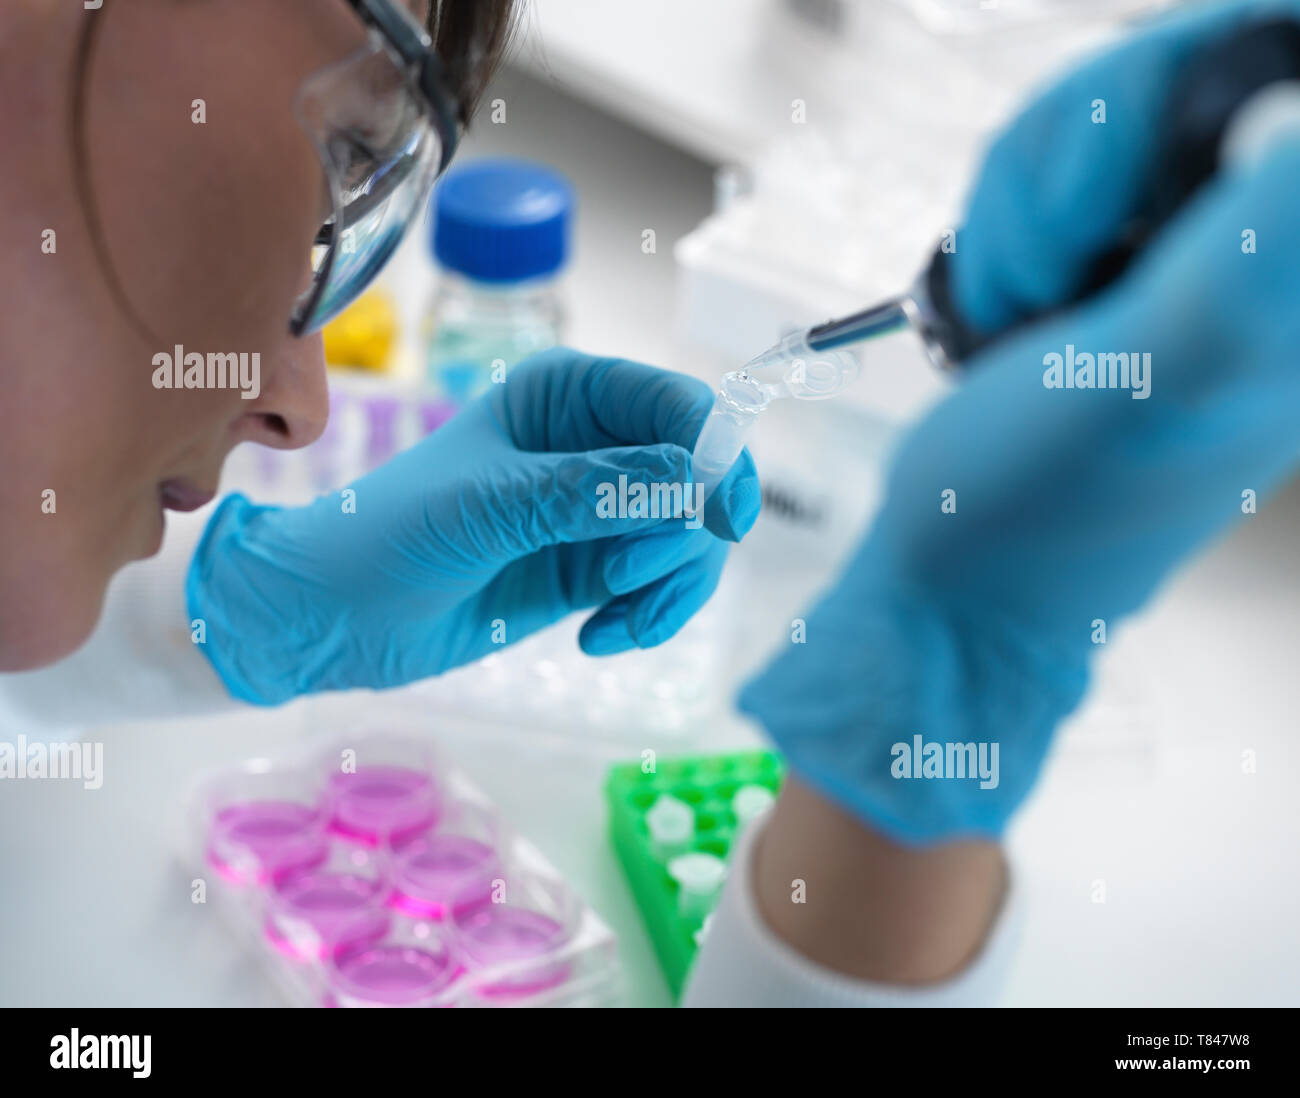 La recherche en biotechnologie, pipetage scientifique d'échantillon dans un flacon pour analyse en laboratoire, sur épaule Banque D'Images